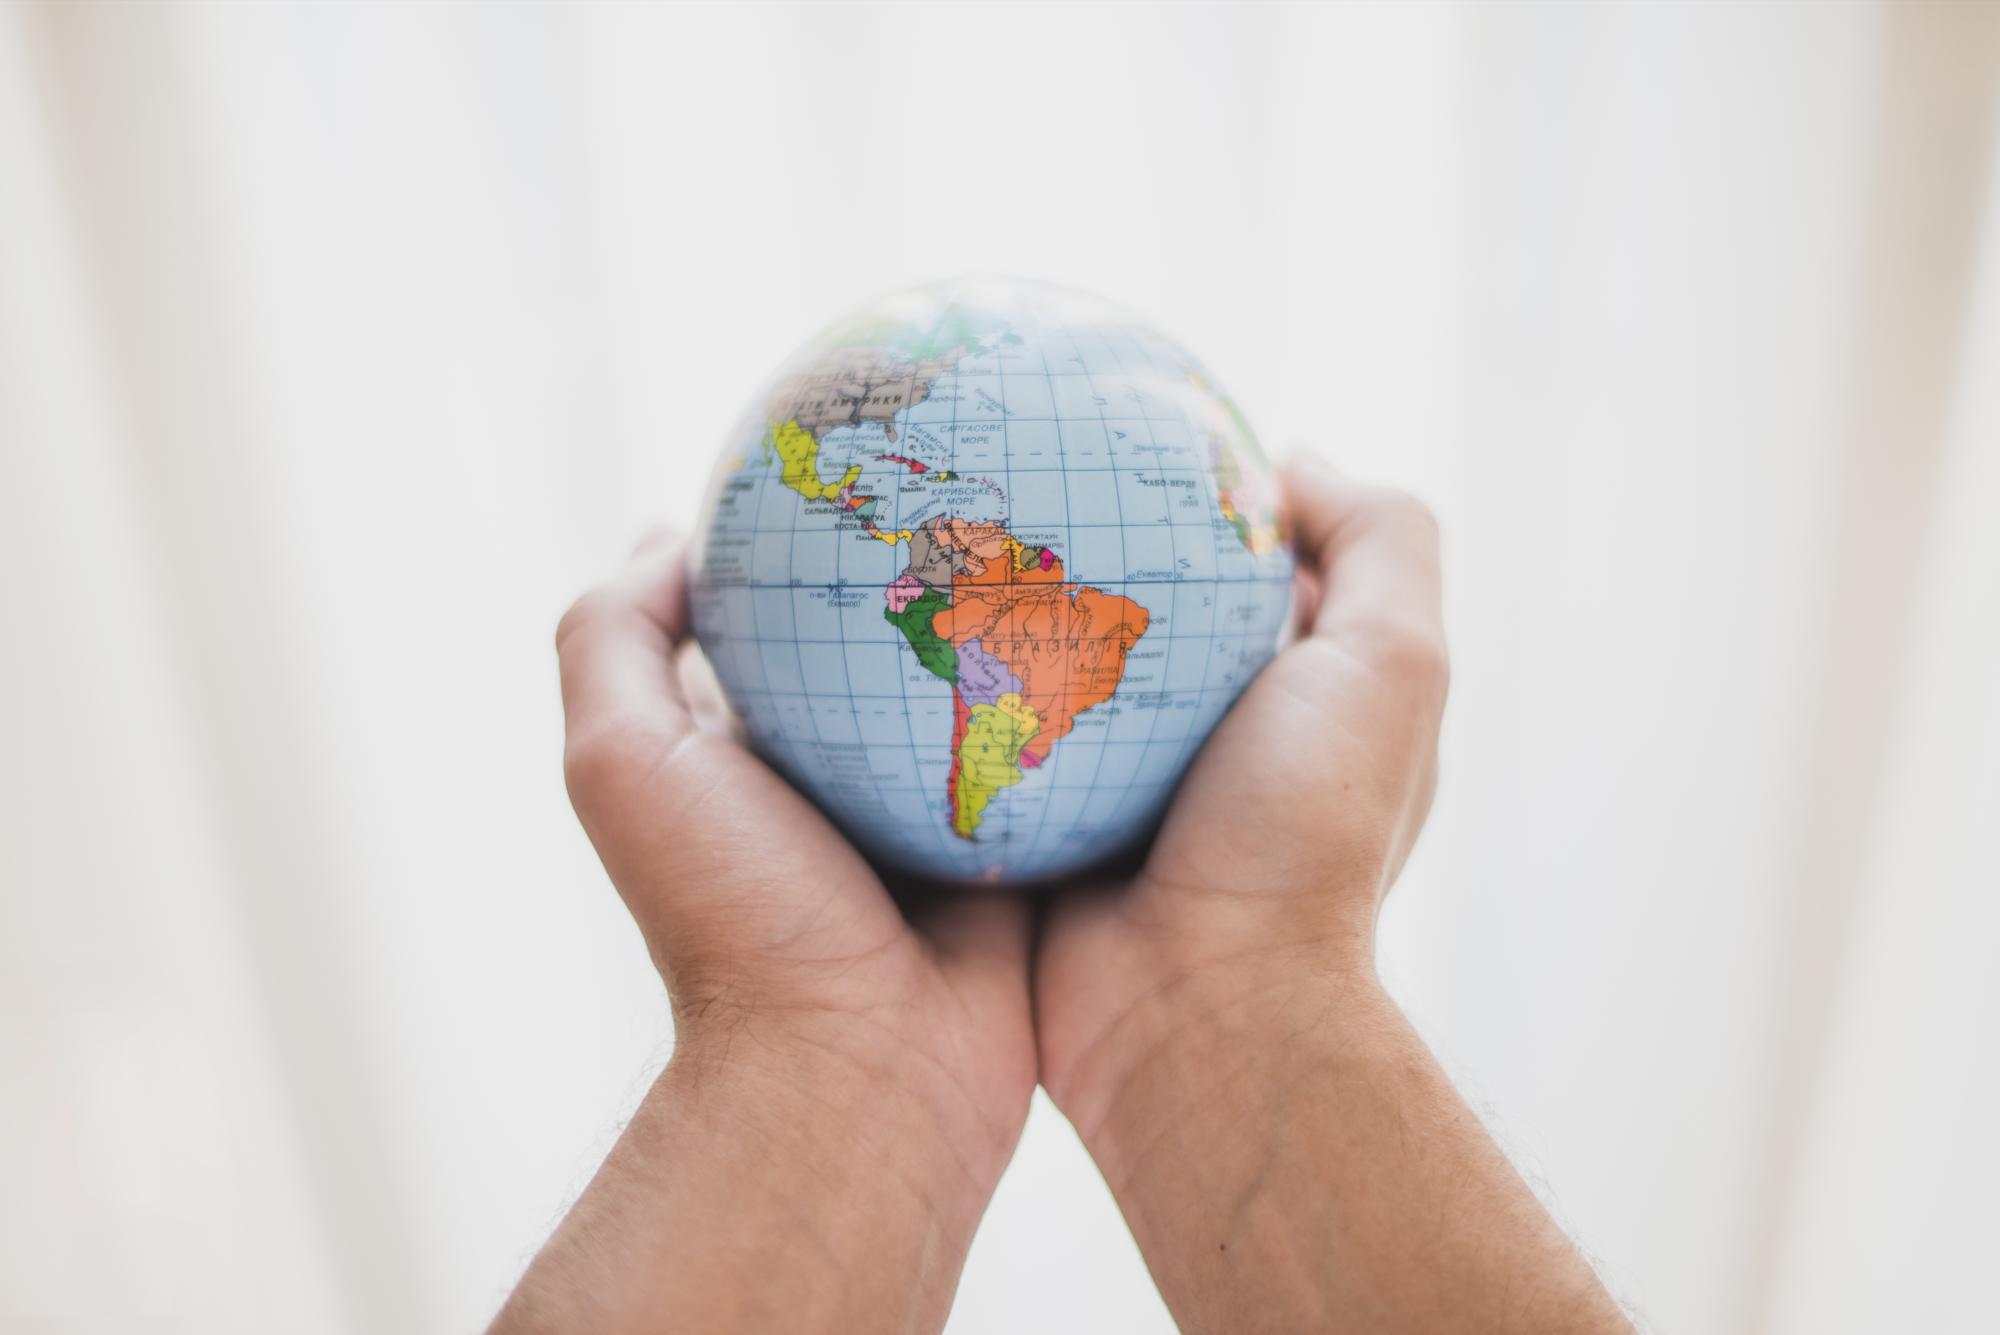 Imagen de un globo terráqueo con América del Sur